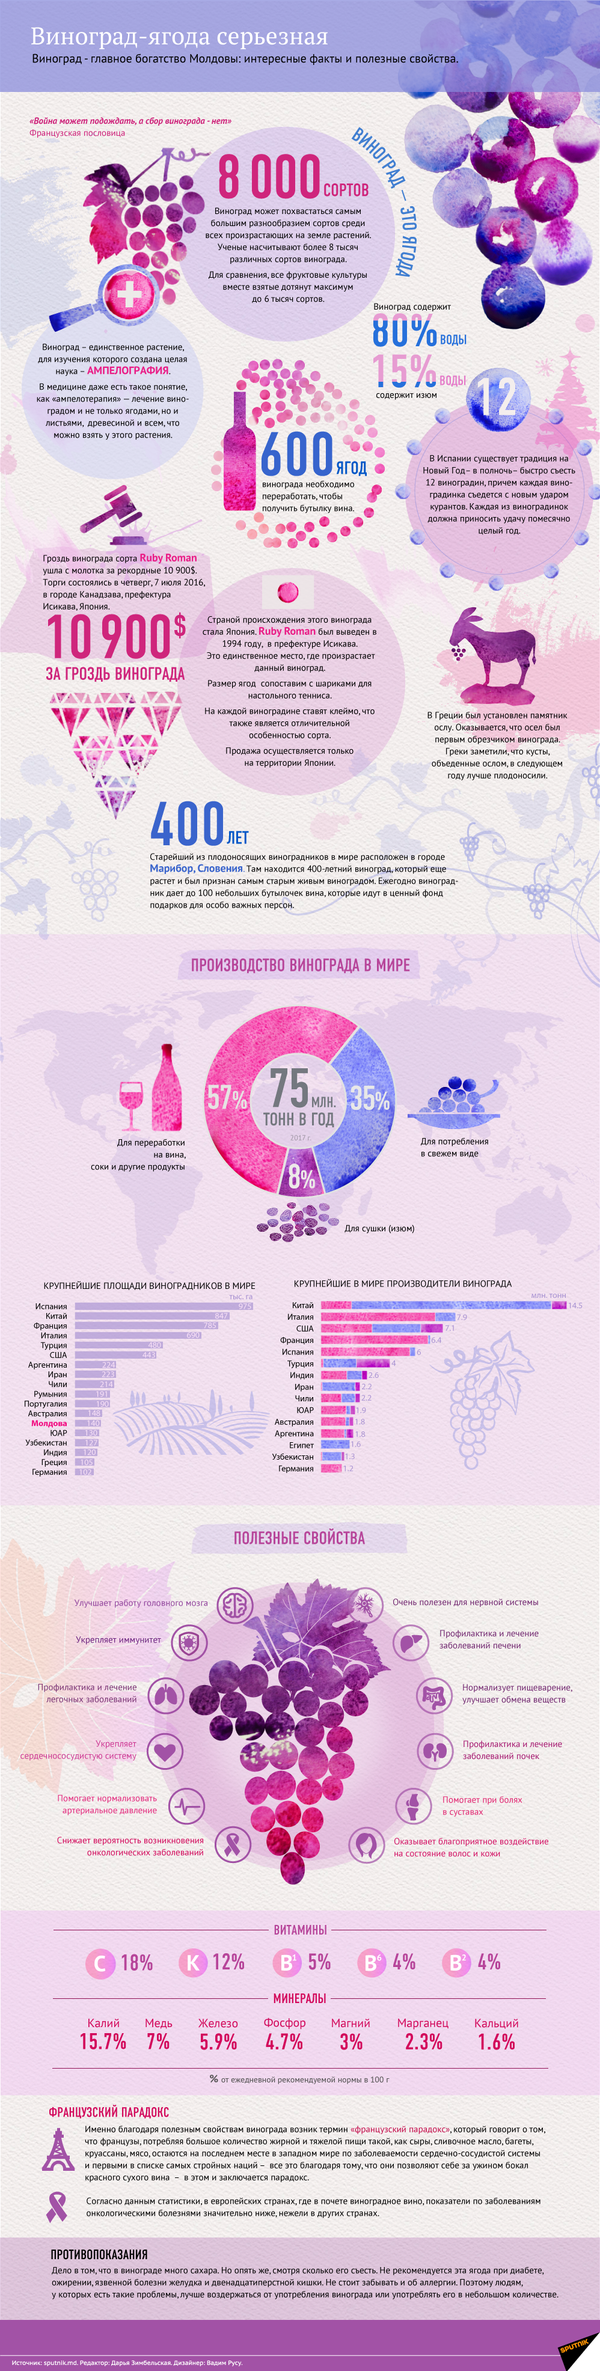 Польза и вред винограда – инфографика на sputnik.by - Sputnik Беларусь